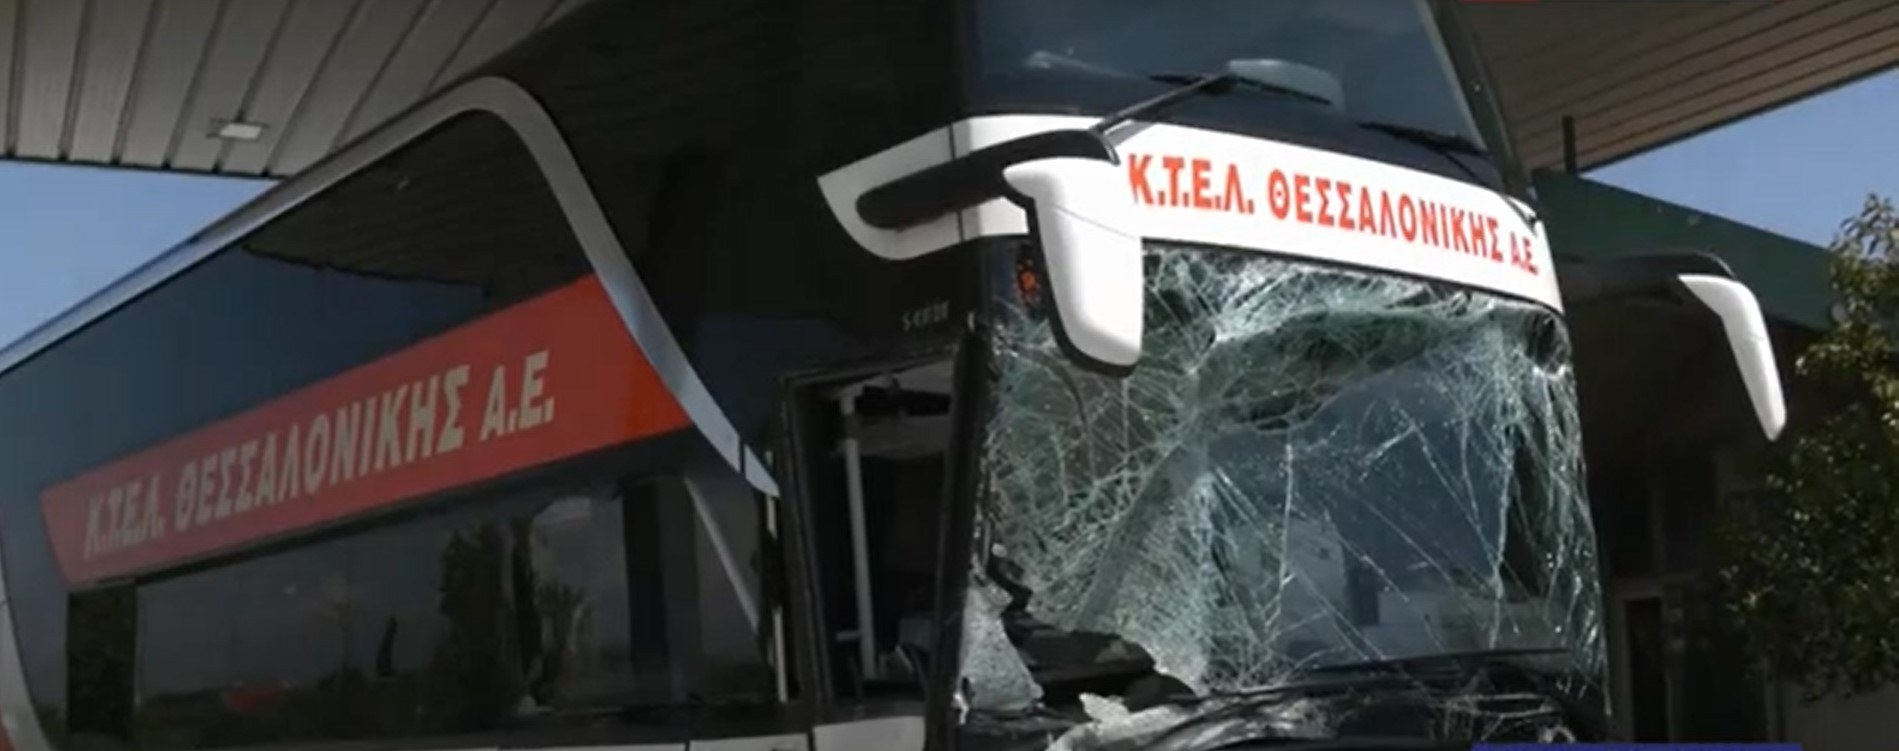 Πιερία: Ένας νεκρός και τρεις σοβαρά τραυματίες από σύγκρουση λεωφορείου με δύο ΙΧ